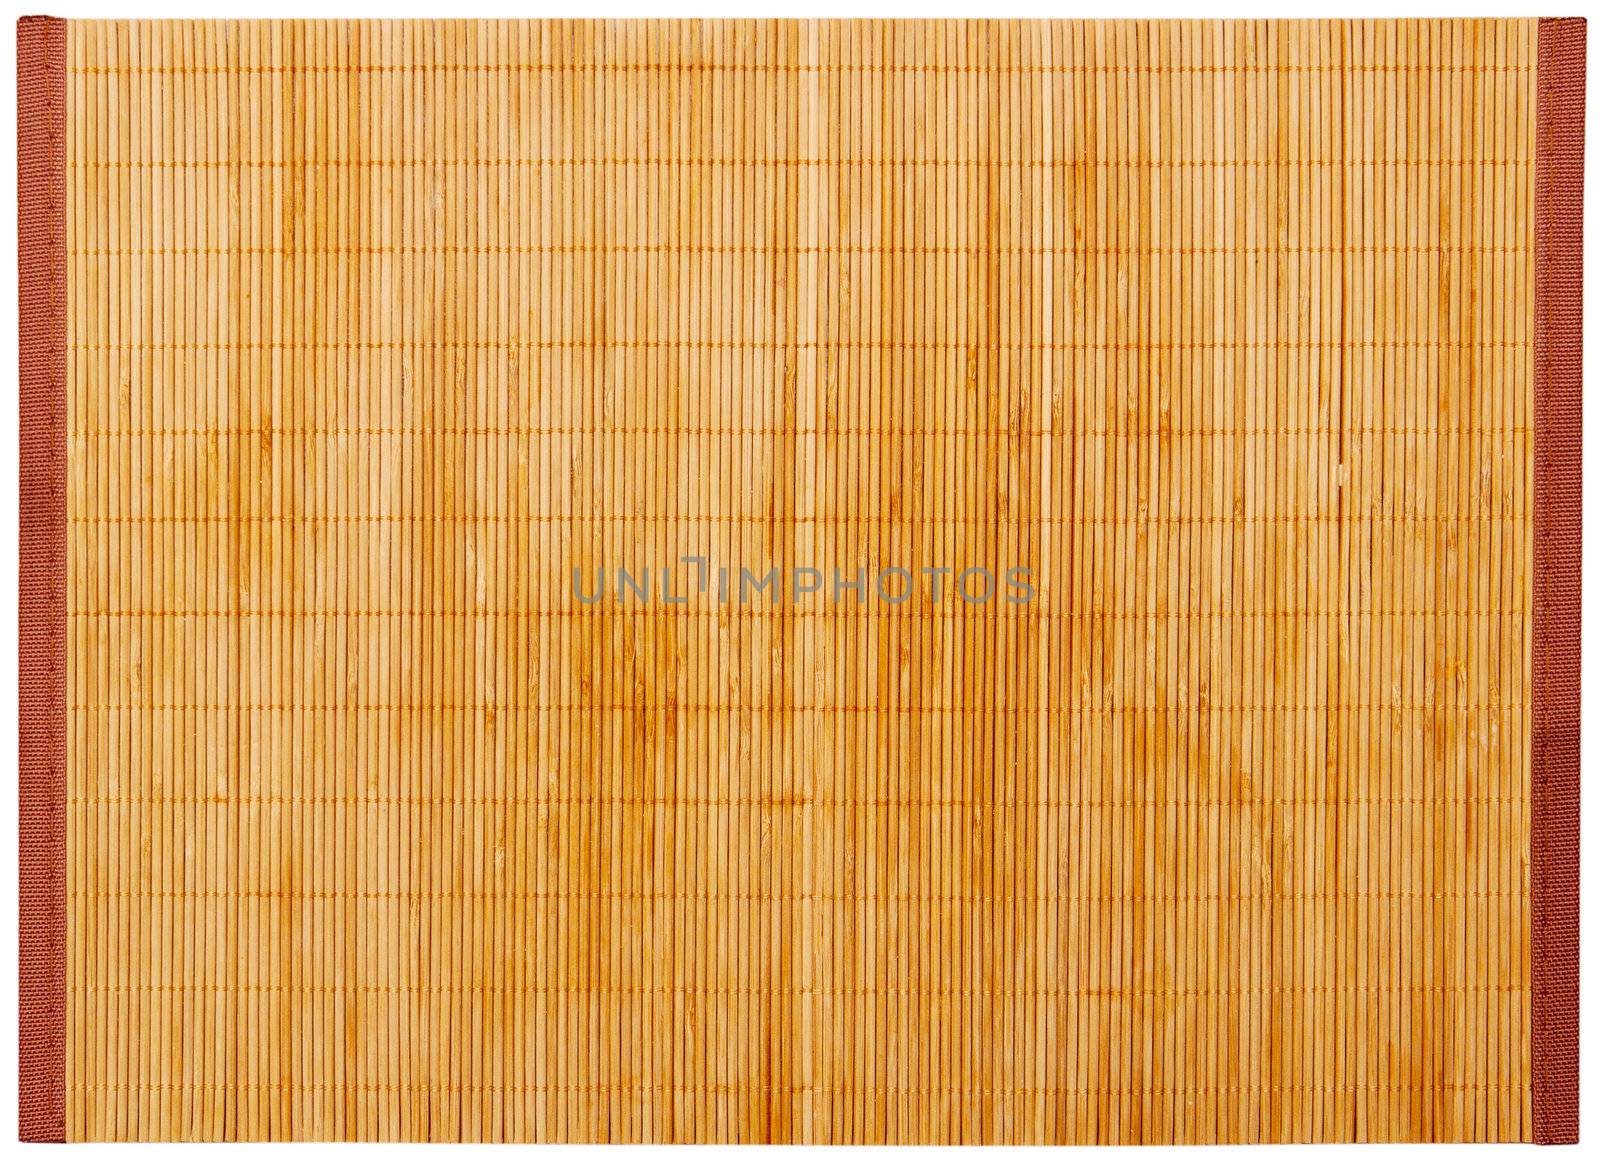 Bamboo napkin isolated on white